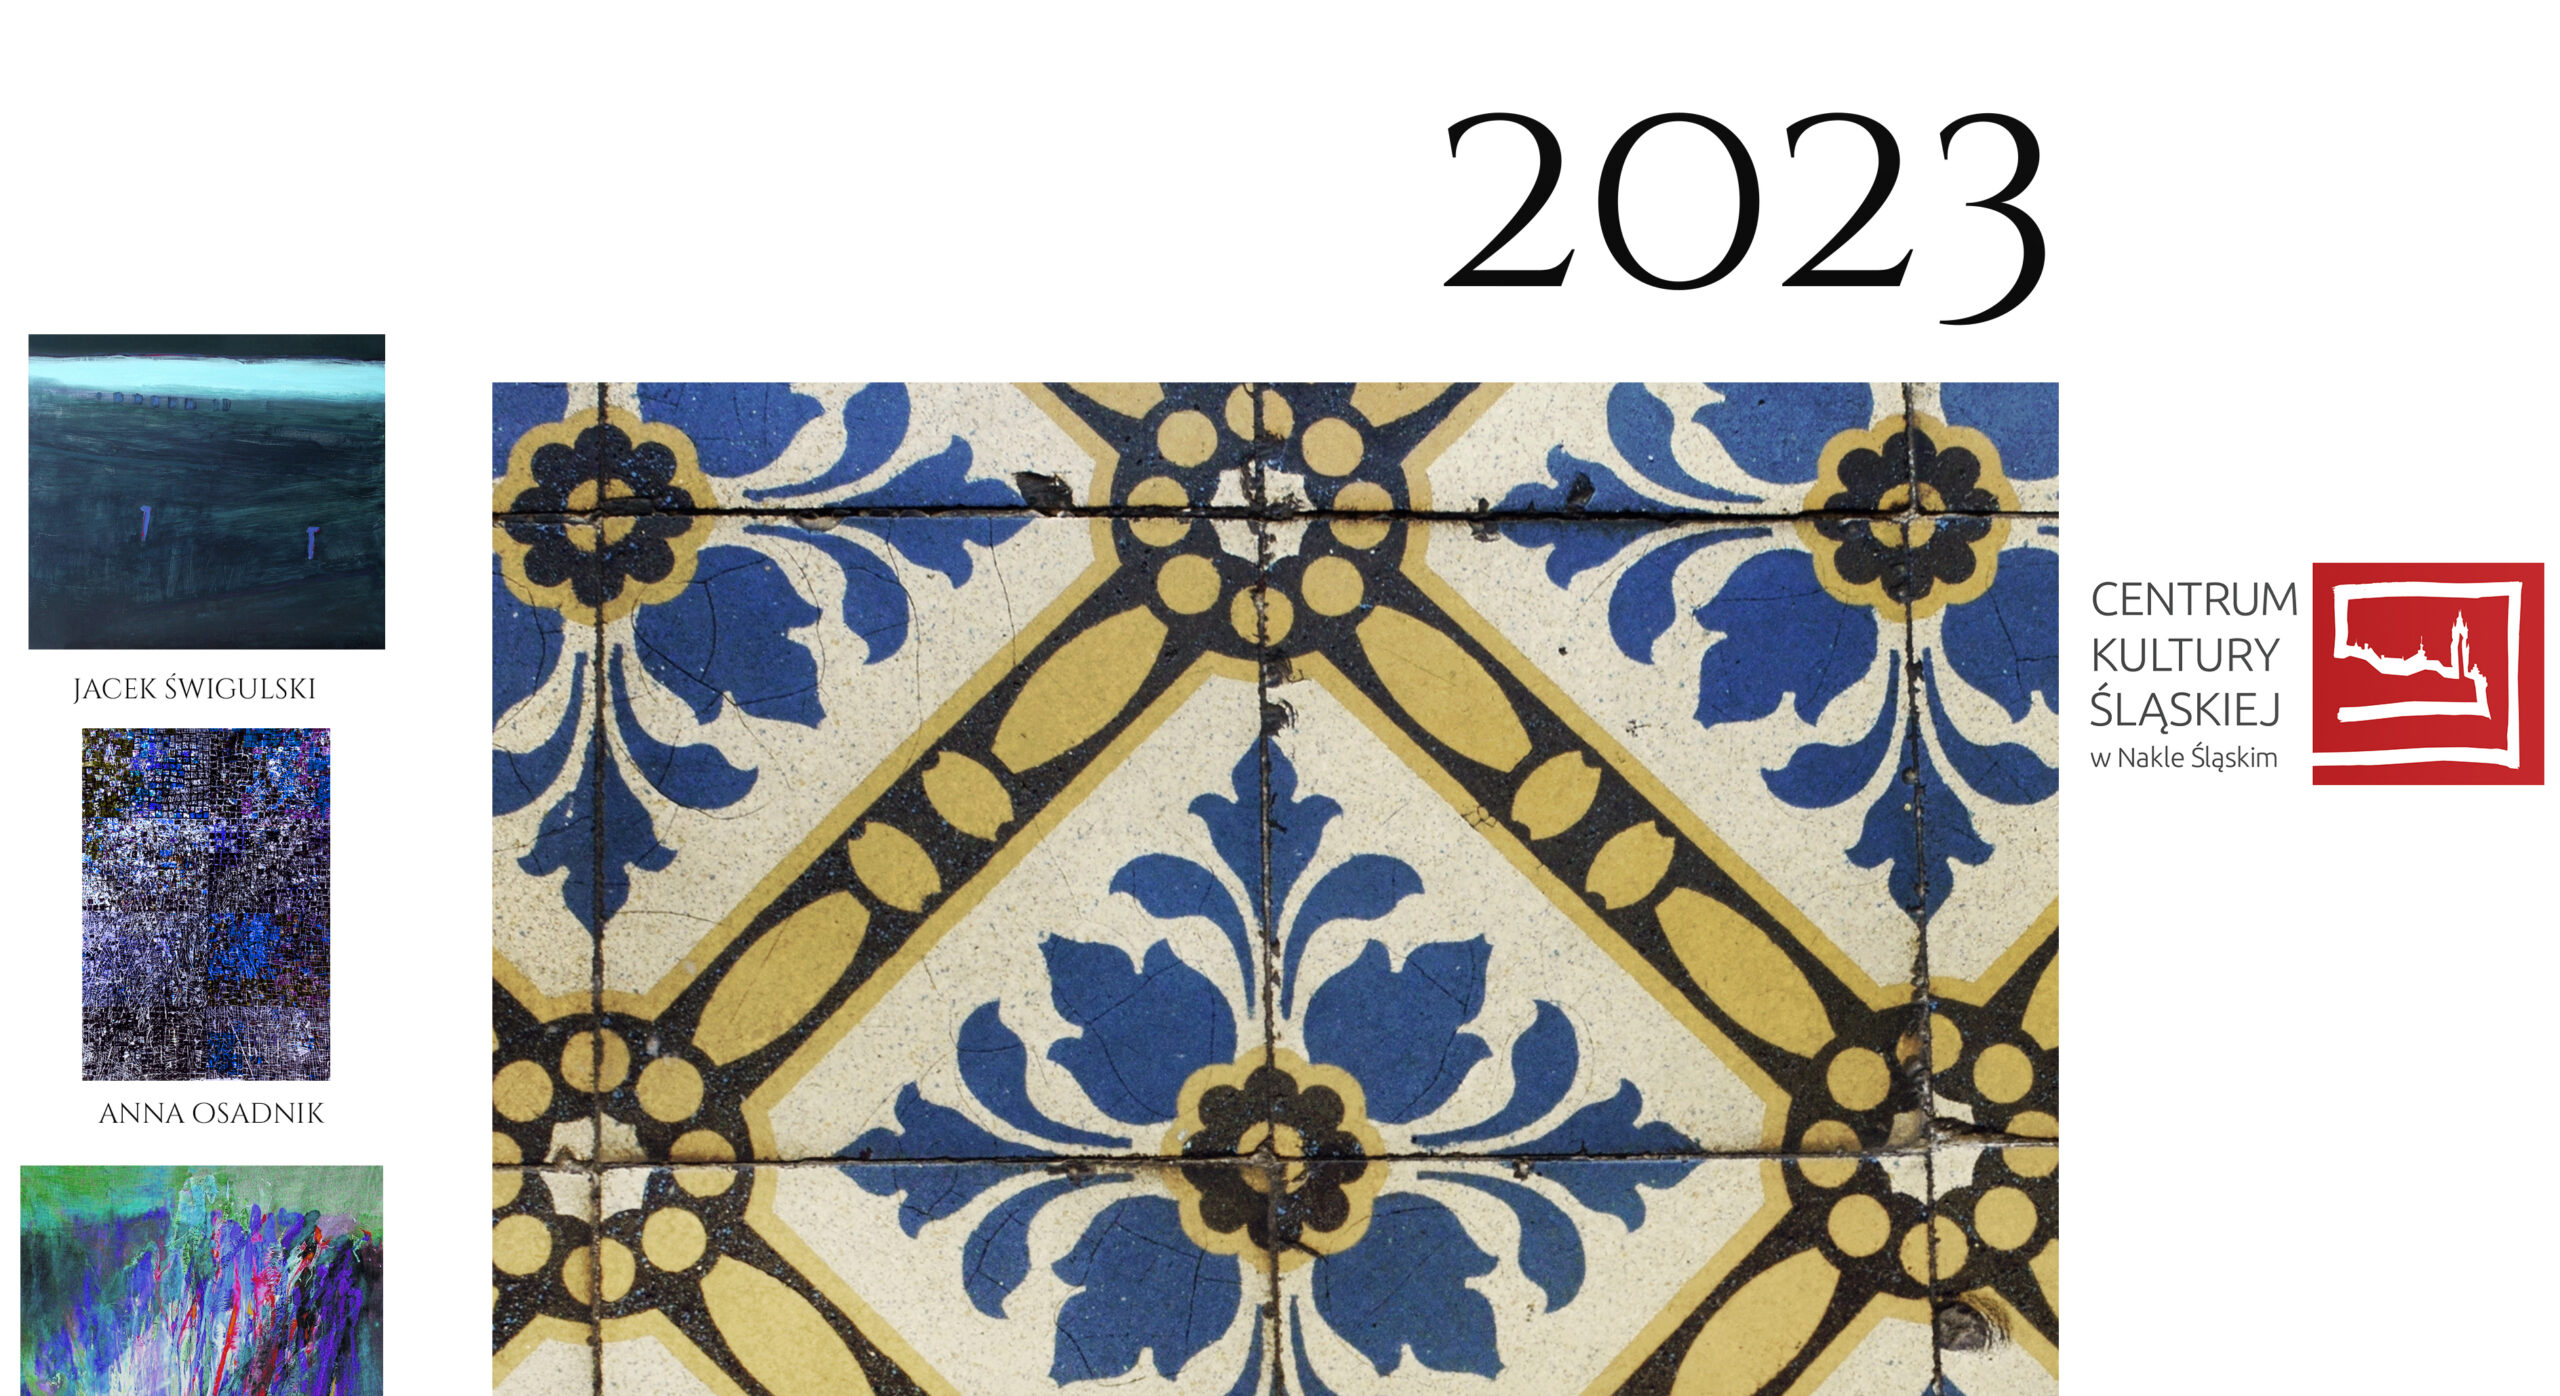 Kartka z kalendarza na miesiąc luty, po lewej obrazy Jacka Świgulskiego i Anny Osadnik, po środku duże zdjęcie niebiesko żółtej posadzki, u góry napis 2023, a po prawej logo Centrum Kultury w Nakle Śląskim.